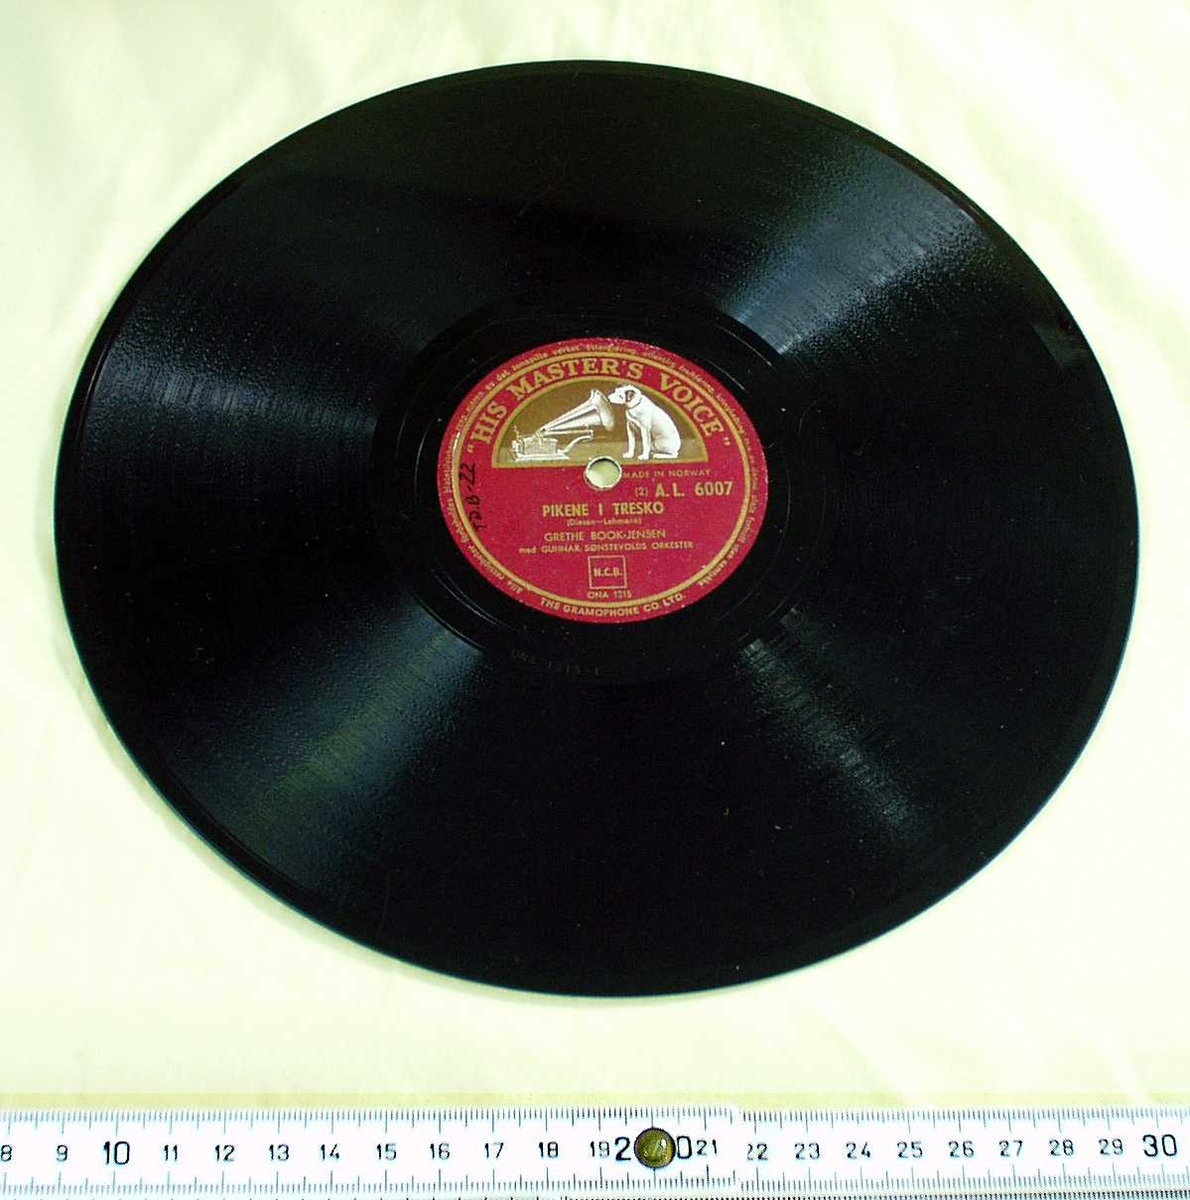 Grammofonplate. Sort med rød etikett. 
Logo: Hund foran en grammofon